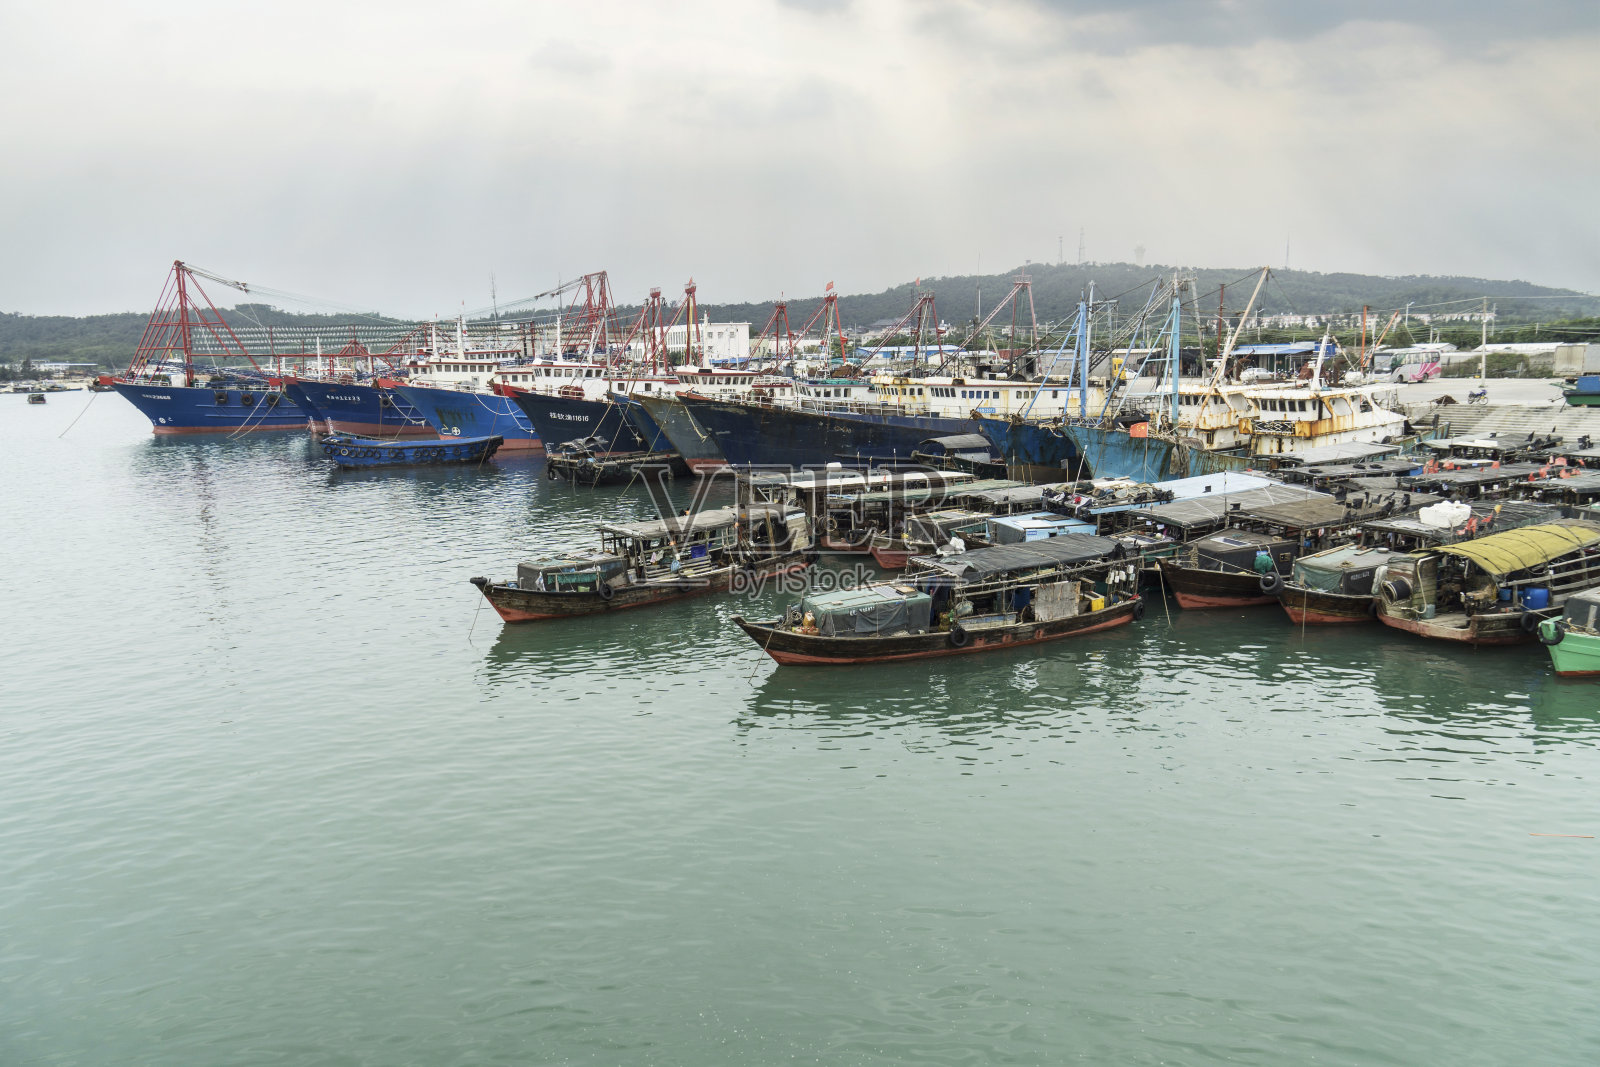 中国浙江省的一个渔港照片摄影图片